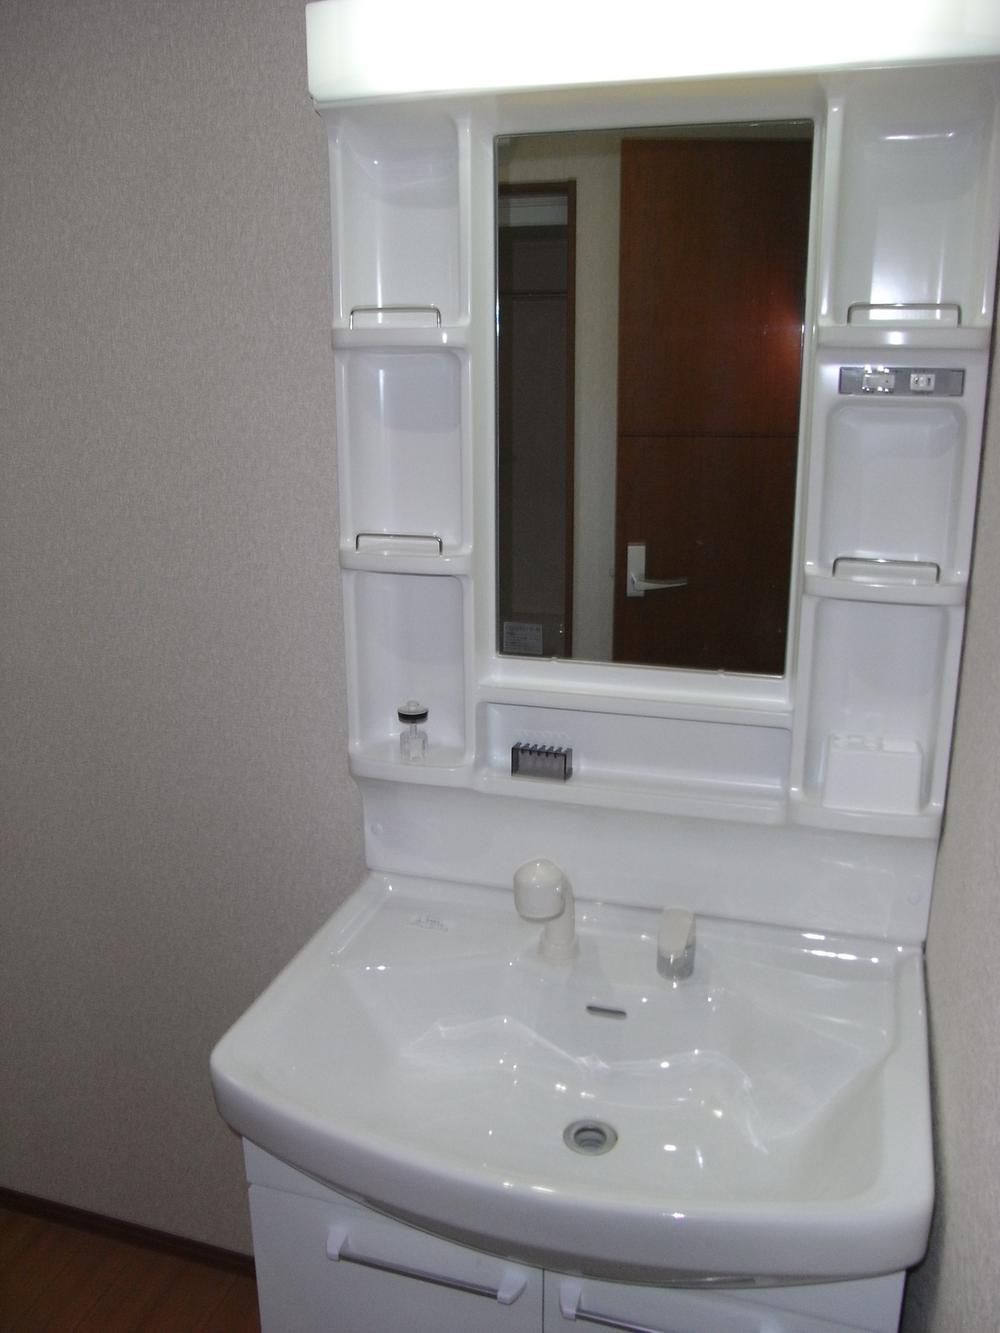 Wash basin, toilet. Indoor (December 6, 2013) Shooting